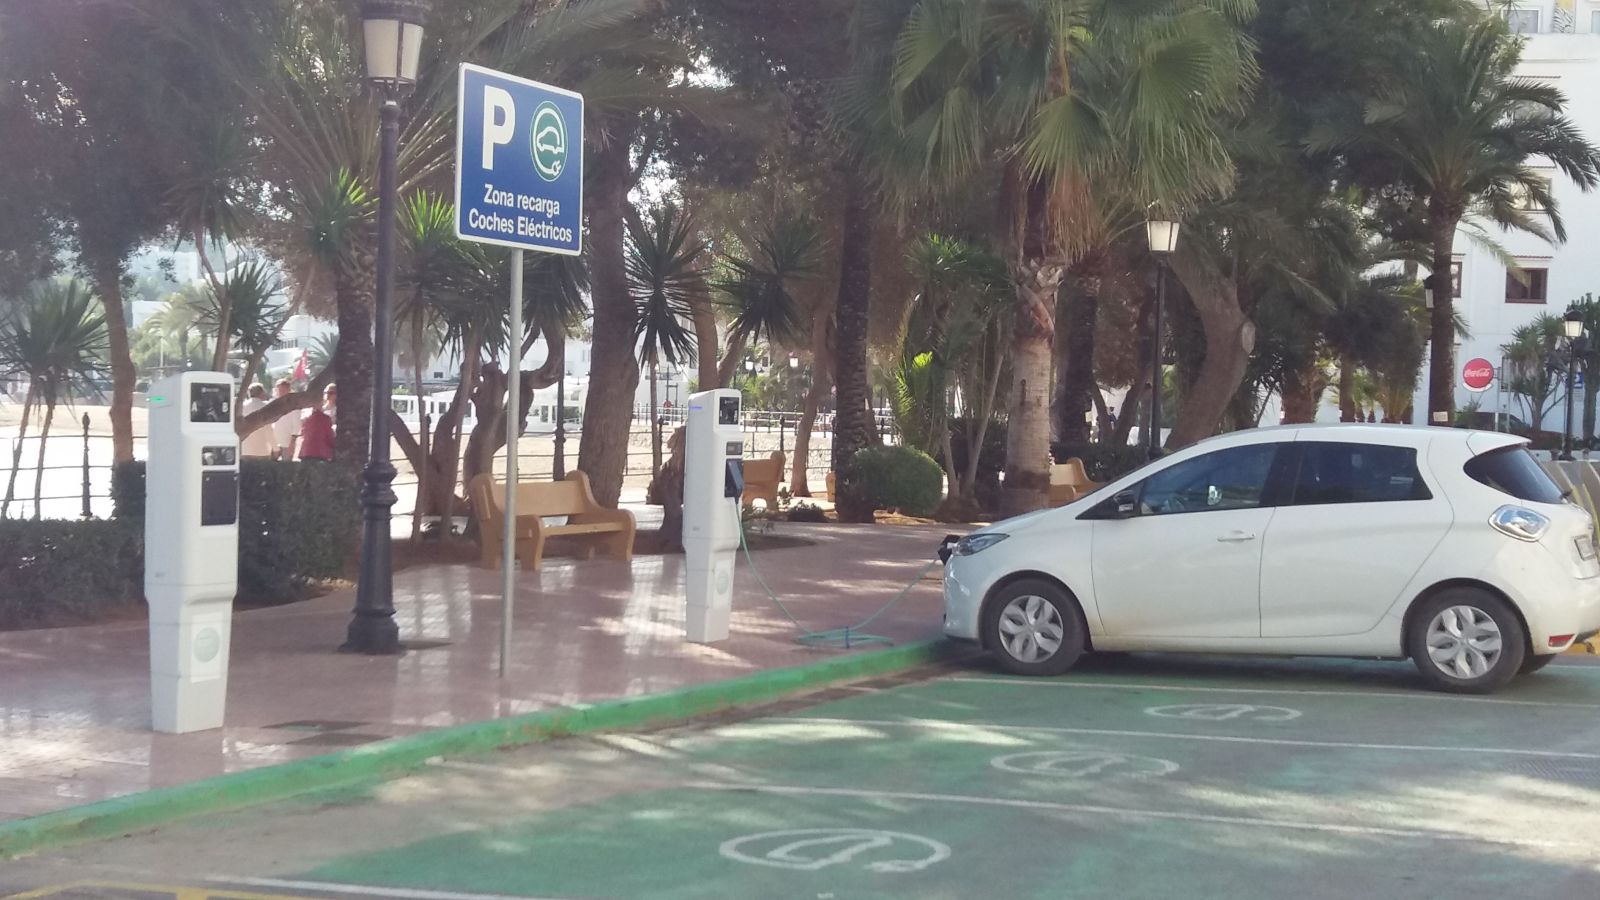 Sale a licitación la instalación de seis puntos de recarga de vehículos eléctricos en Jesús, Santa Gertrudis, es Puig d’en Valls y es Canar